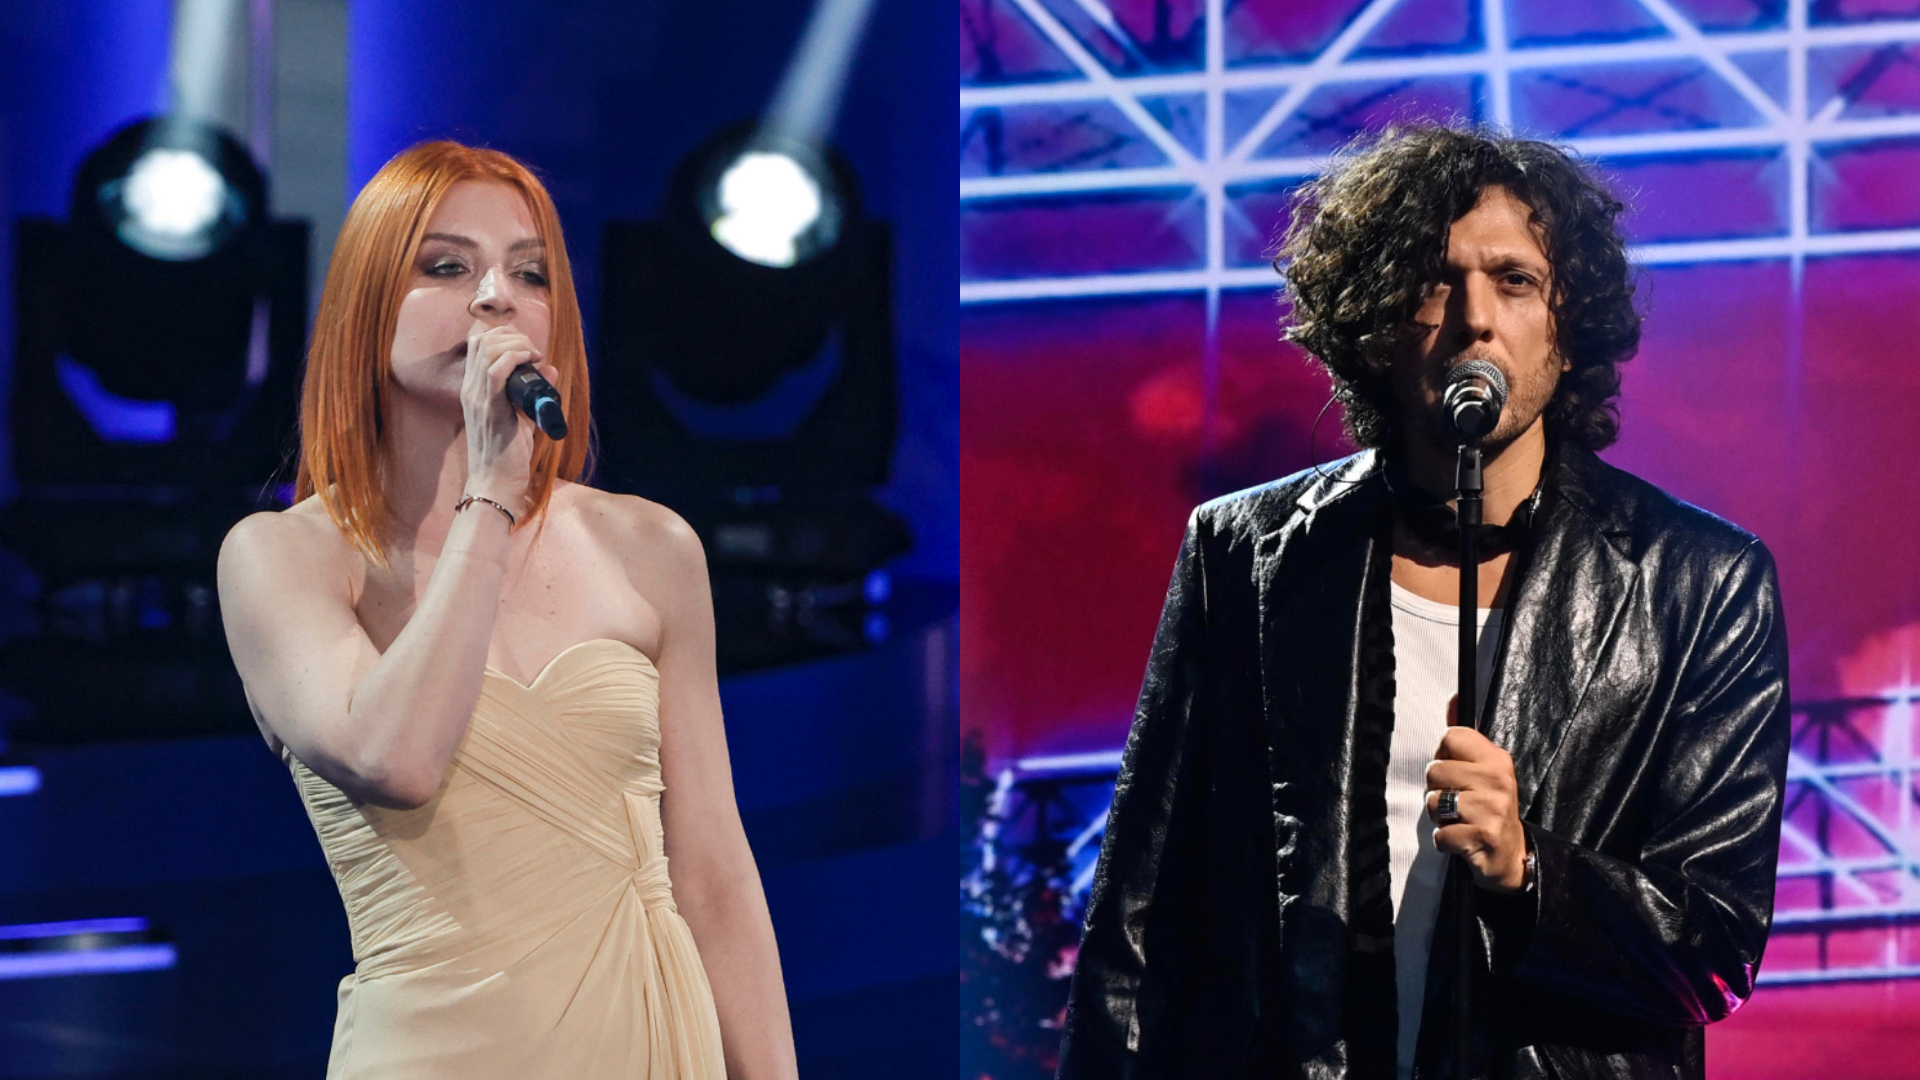 El 1 de mayo se dieron a conocer los nombres de los presentadores del concierto: Ermal Meta y Noemí en el escenario.